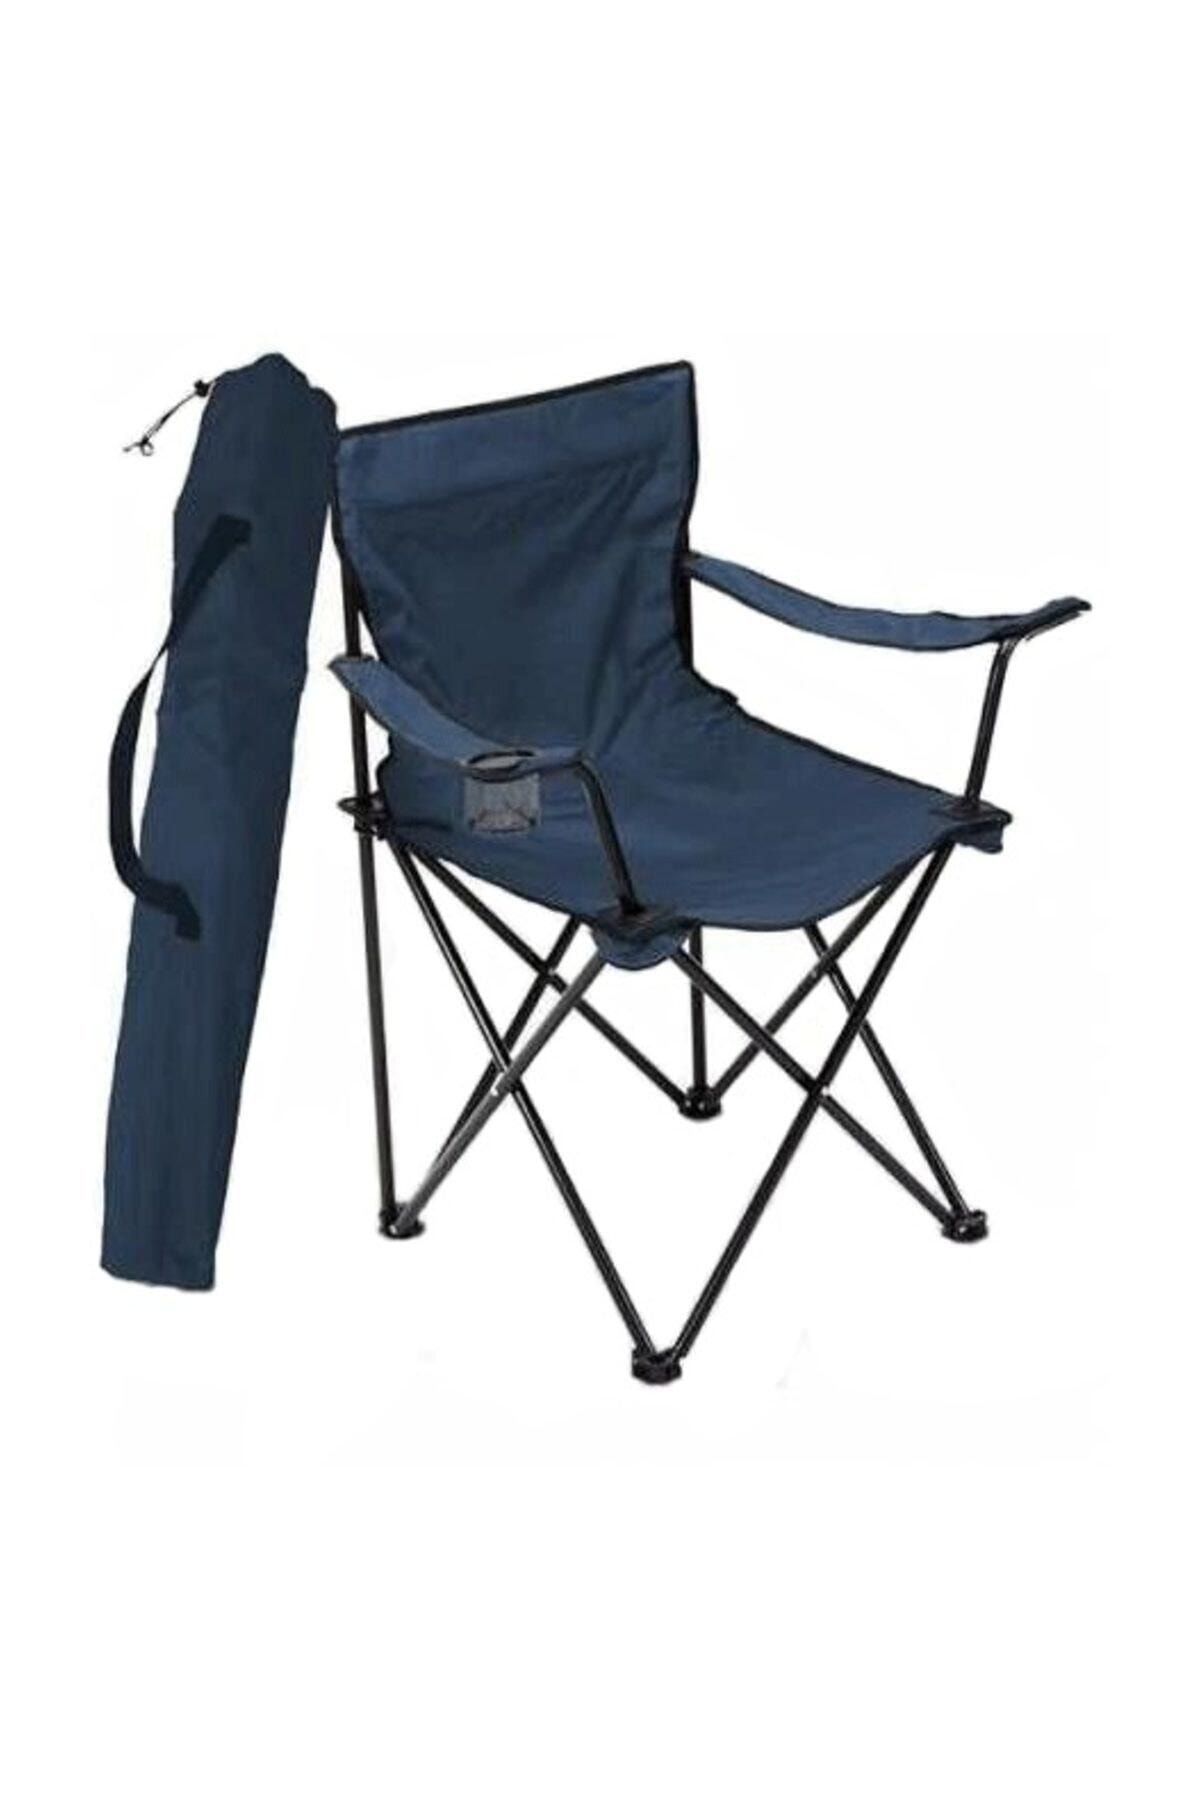 Bofigo Tekli Kamp Sandalyesi Katlanır Sandalye Bahçe Koltuğu Piknik Plaj Balkon Sandalyesi Mavi